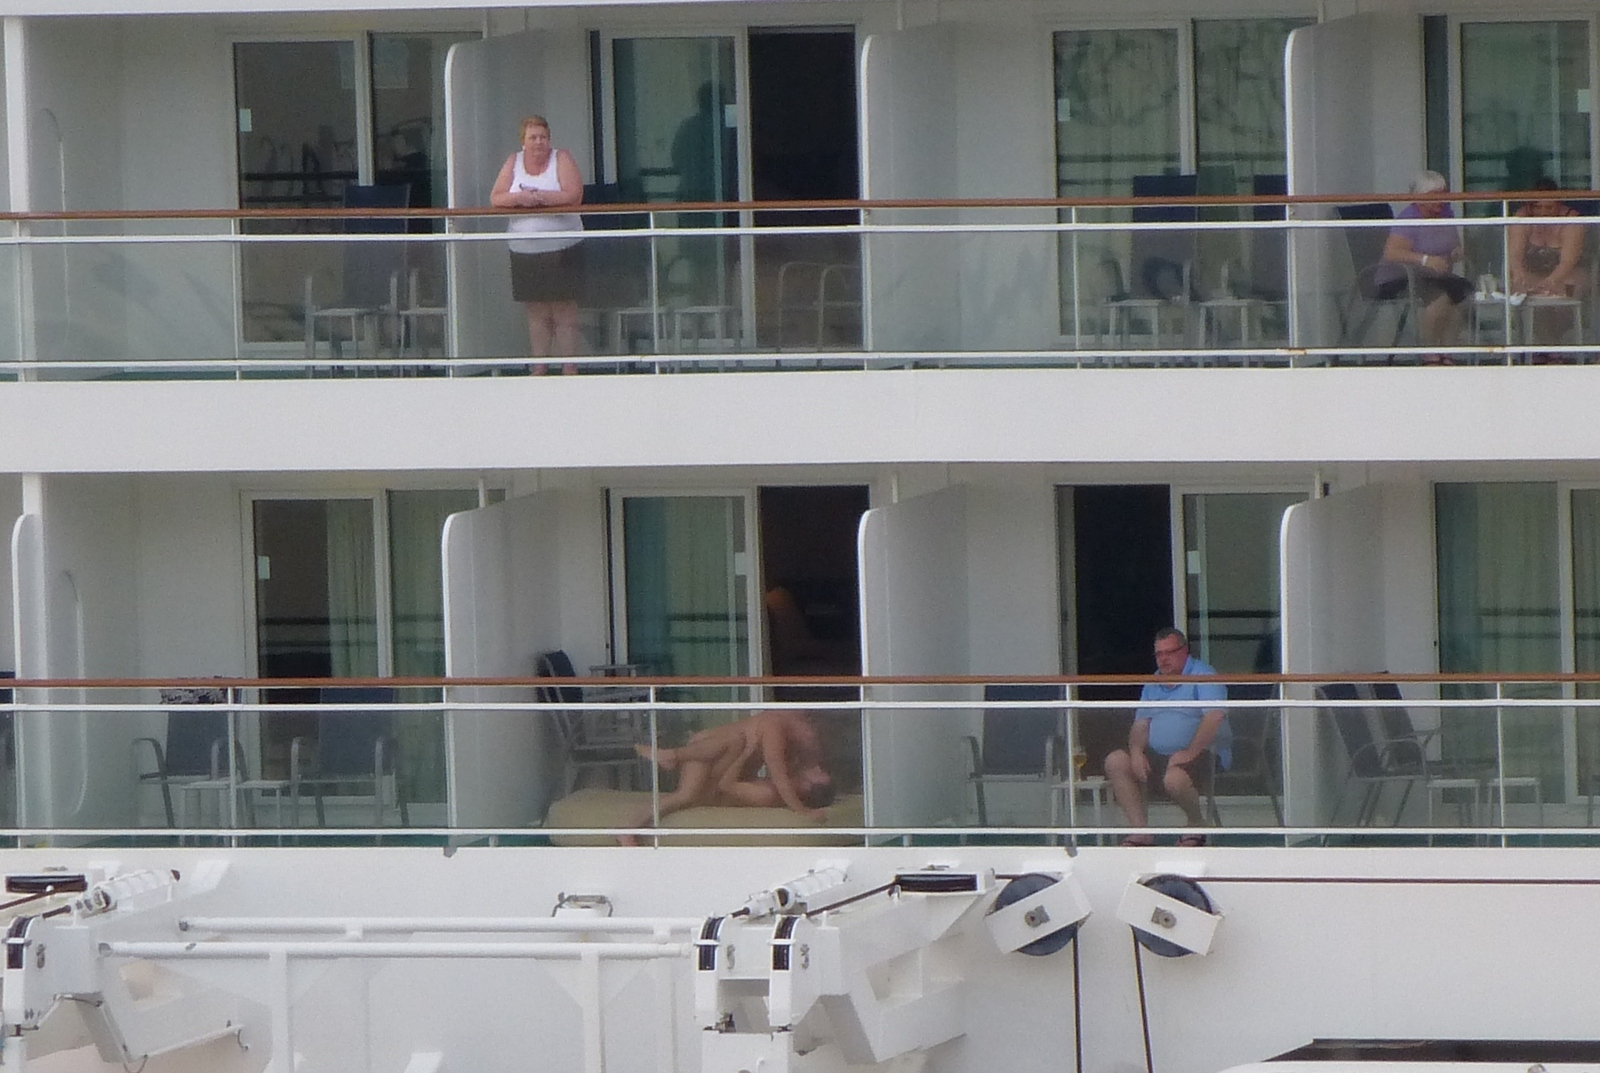 Amateur cruise ship sex fan images